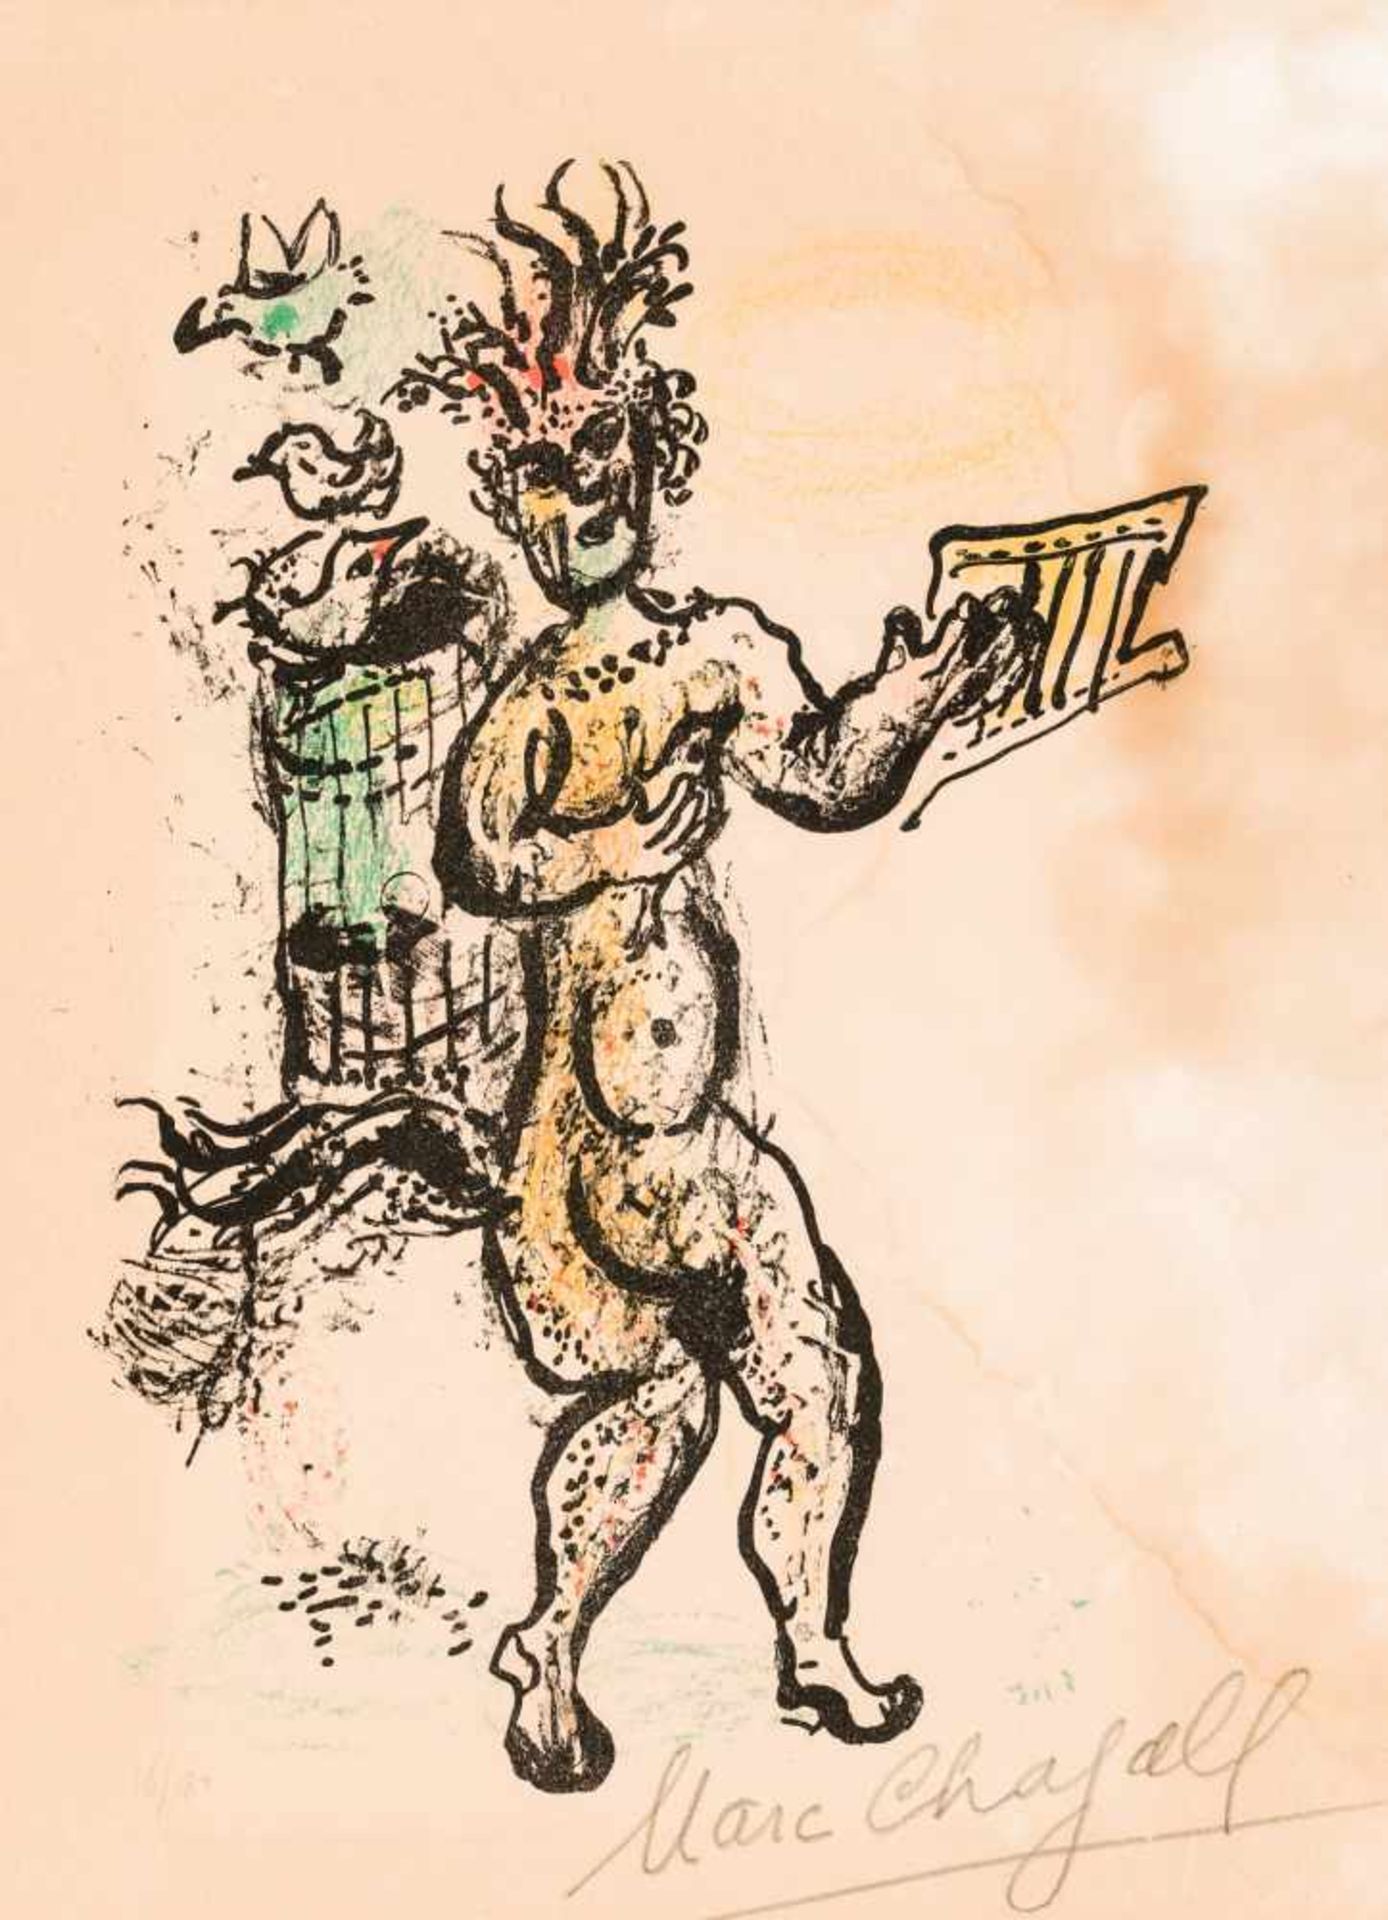 Marc ChagallPeskowatik bei Witebsk 1887 - 1985 Saint-Paul-de-VencePapagenoLithografie auf Papier /